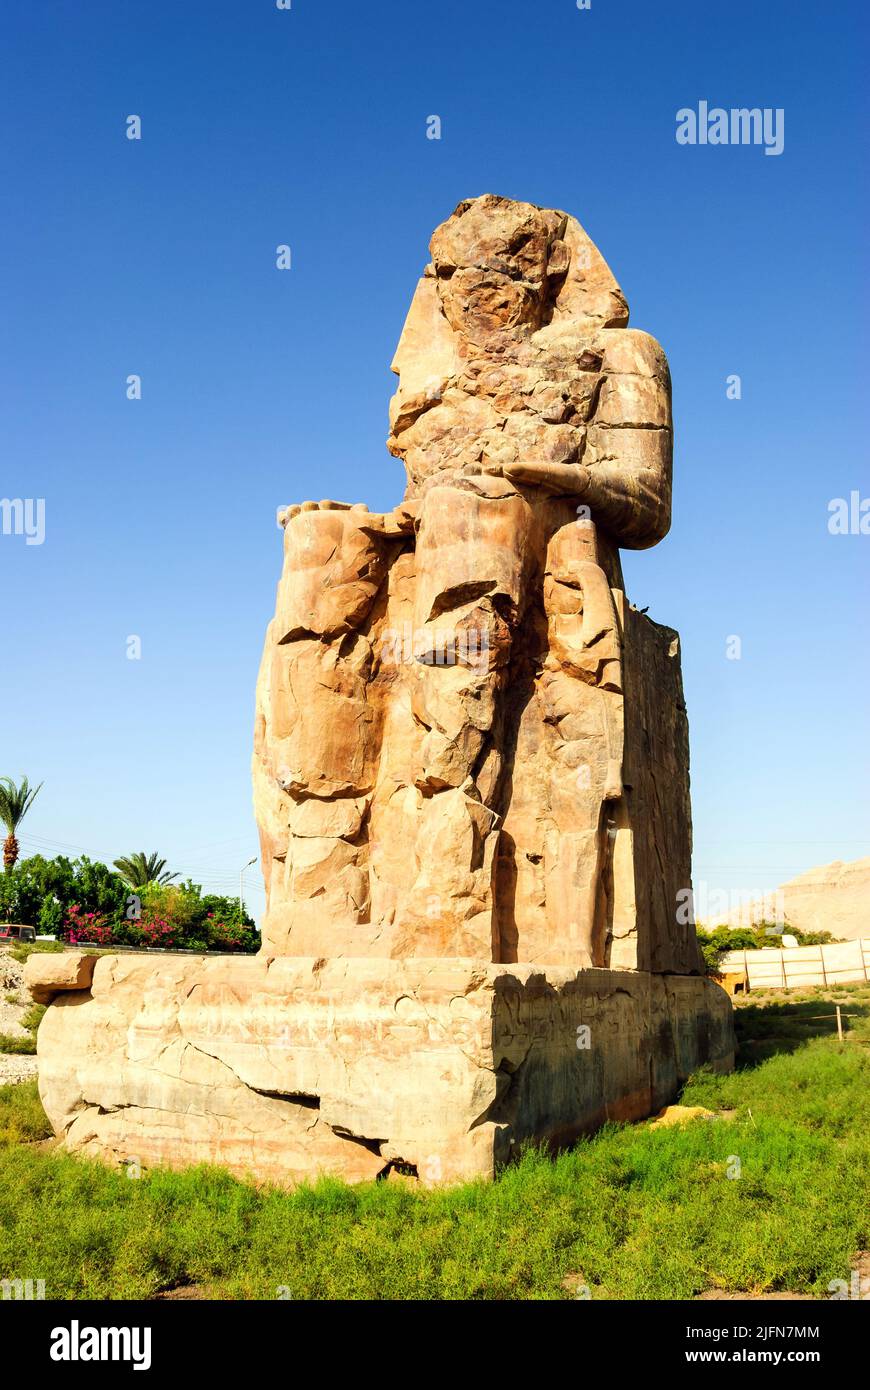 Colosos de Memnon - necrópolis tebana -Alto Egipto Foto de stock